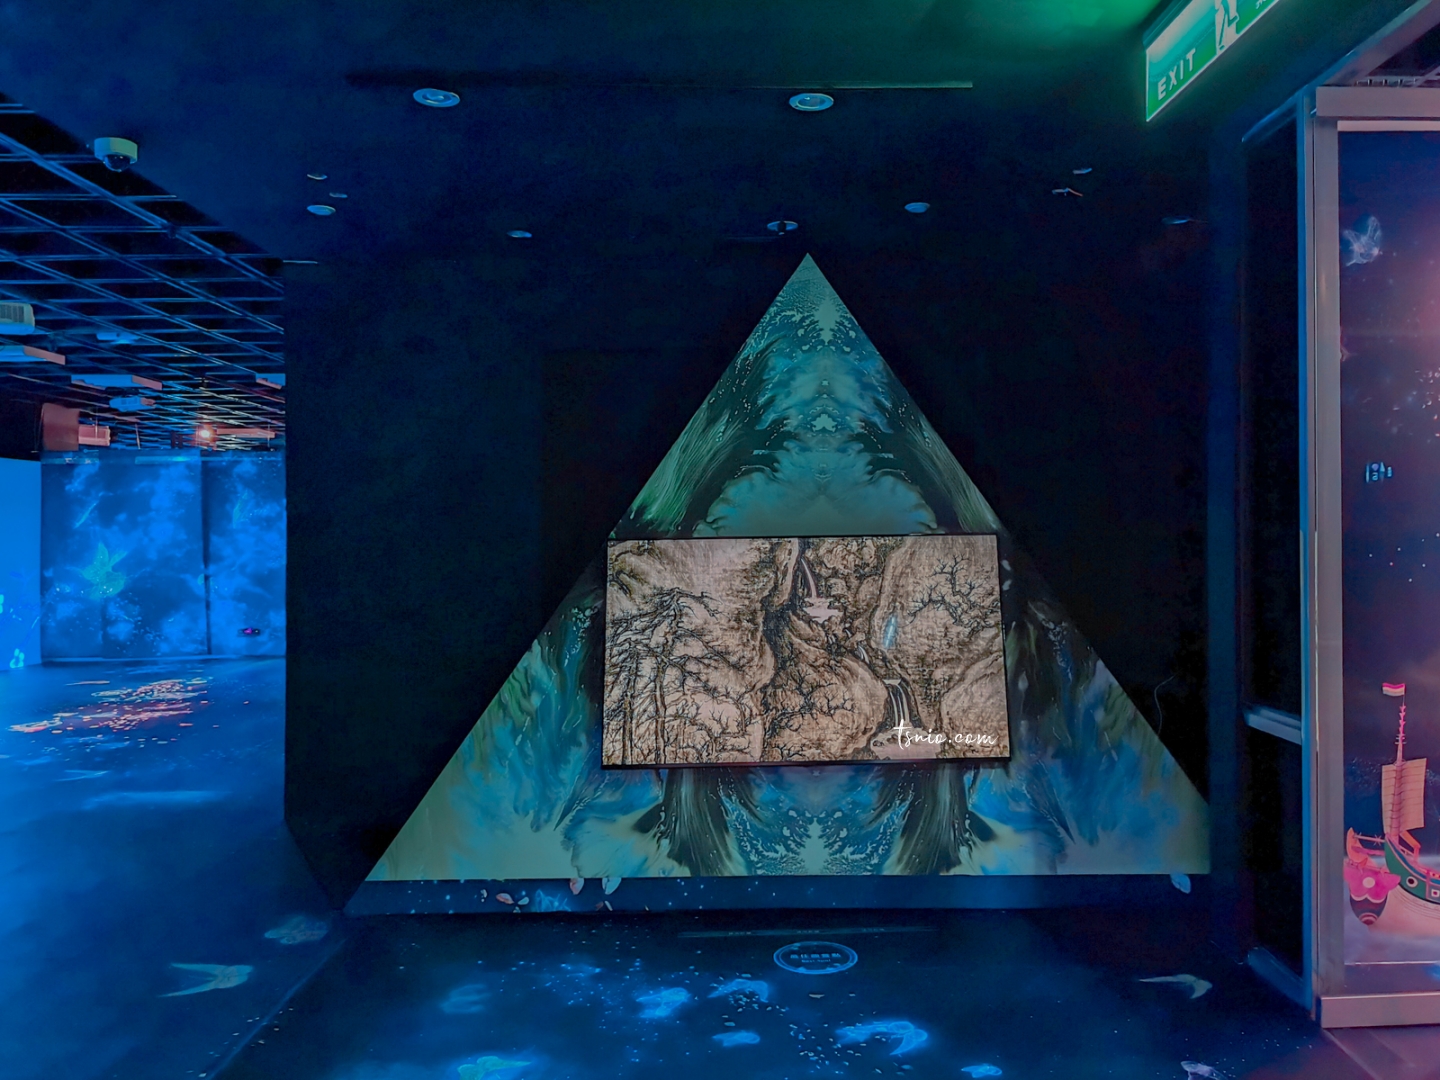 故宮魔幻山水歷險 沈浸式互動展覽 經典美學與現代科技的相遇